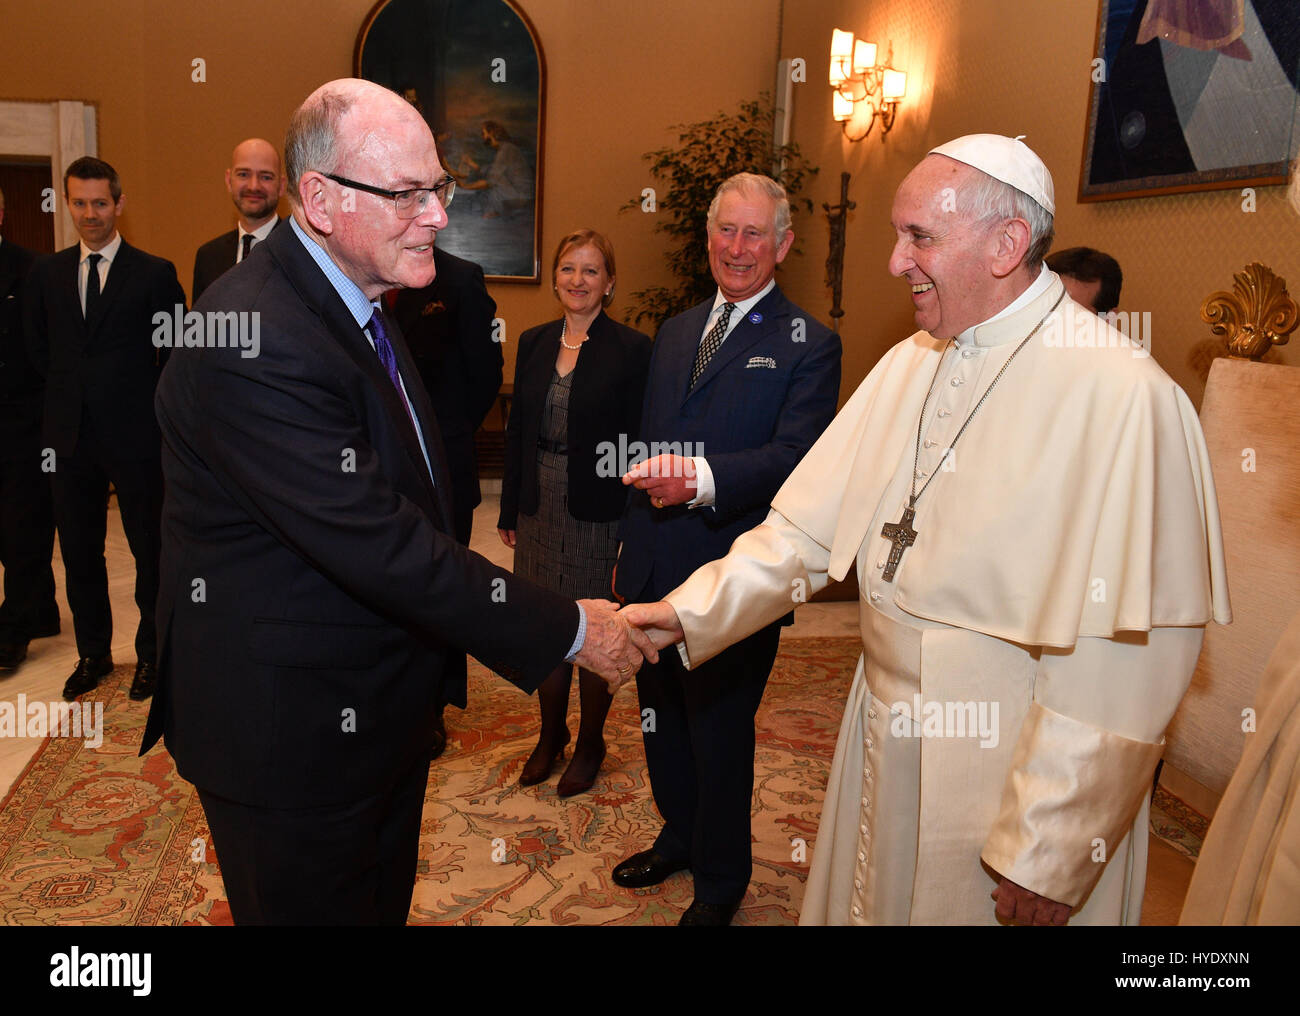 the-sun-royal-photographer-arthur-edwards-shakes-hands-with-pope-francis-HYDXNN.jpg